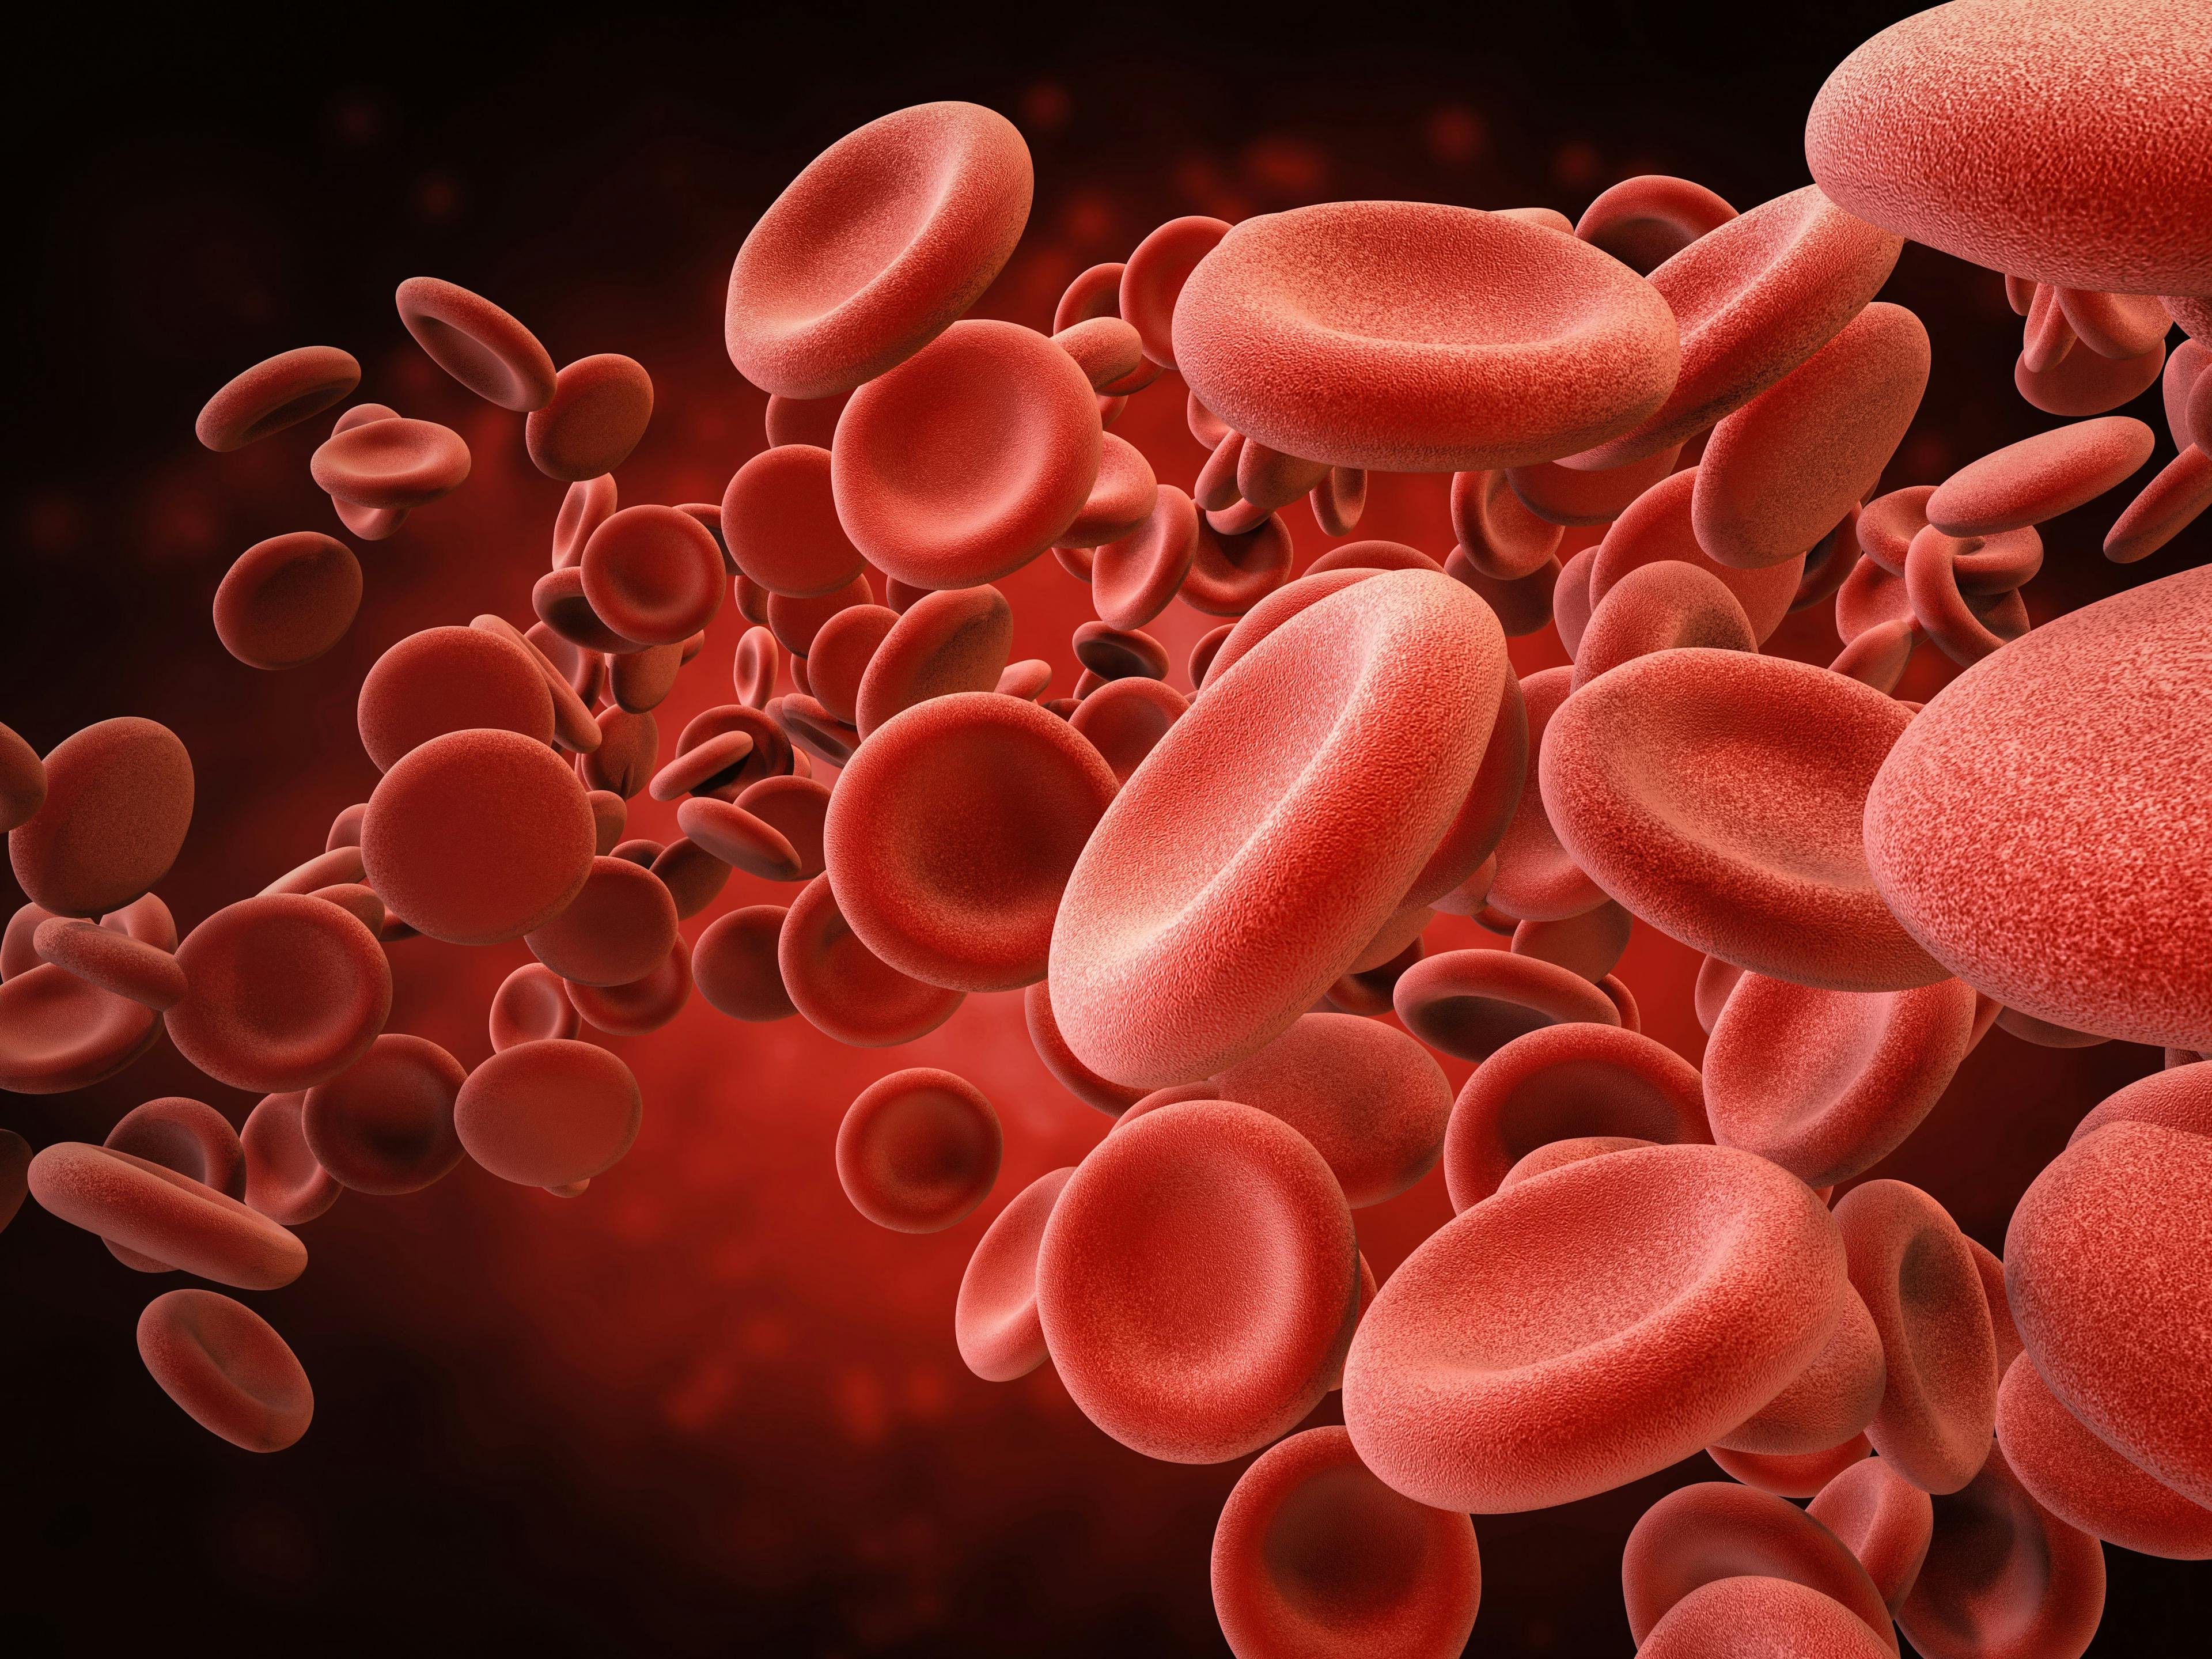 Digital illustration of red blood cells. | Credit: Fotolia